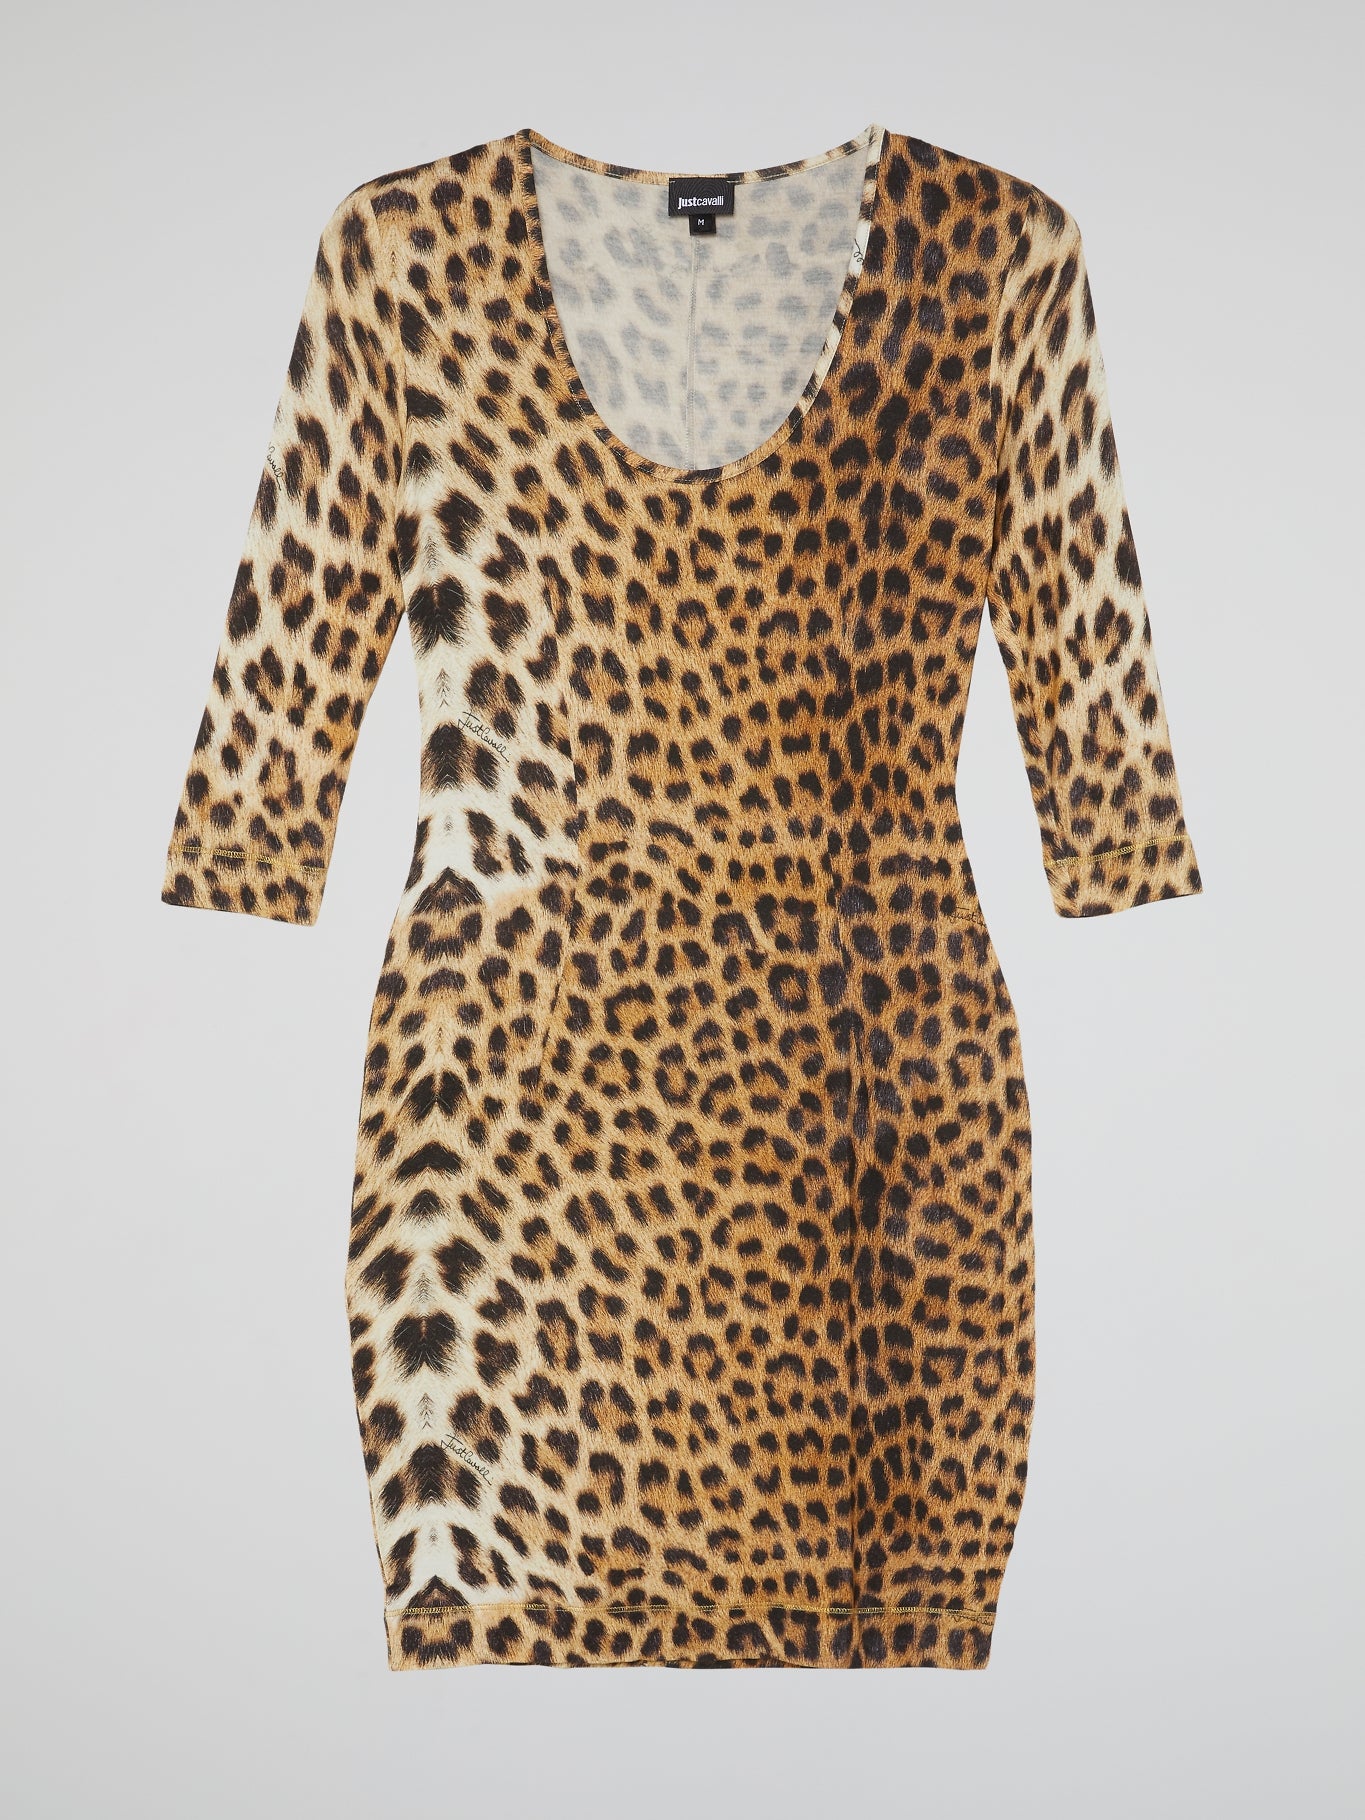 Leopard Print Scoop Neck Dress